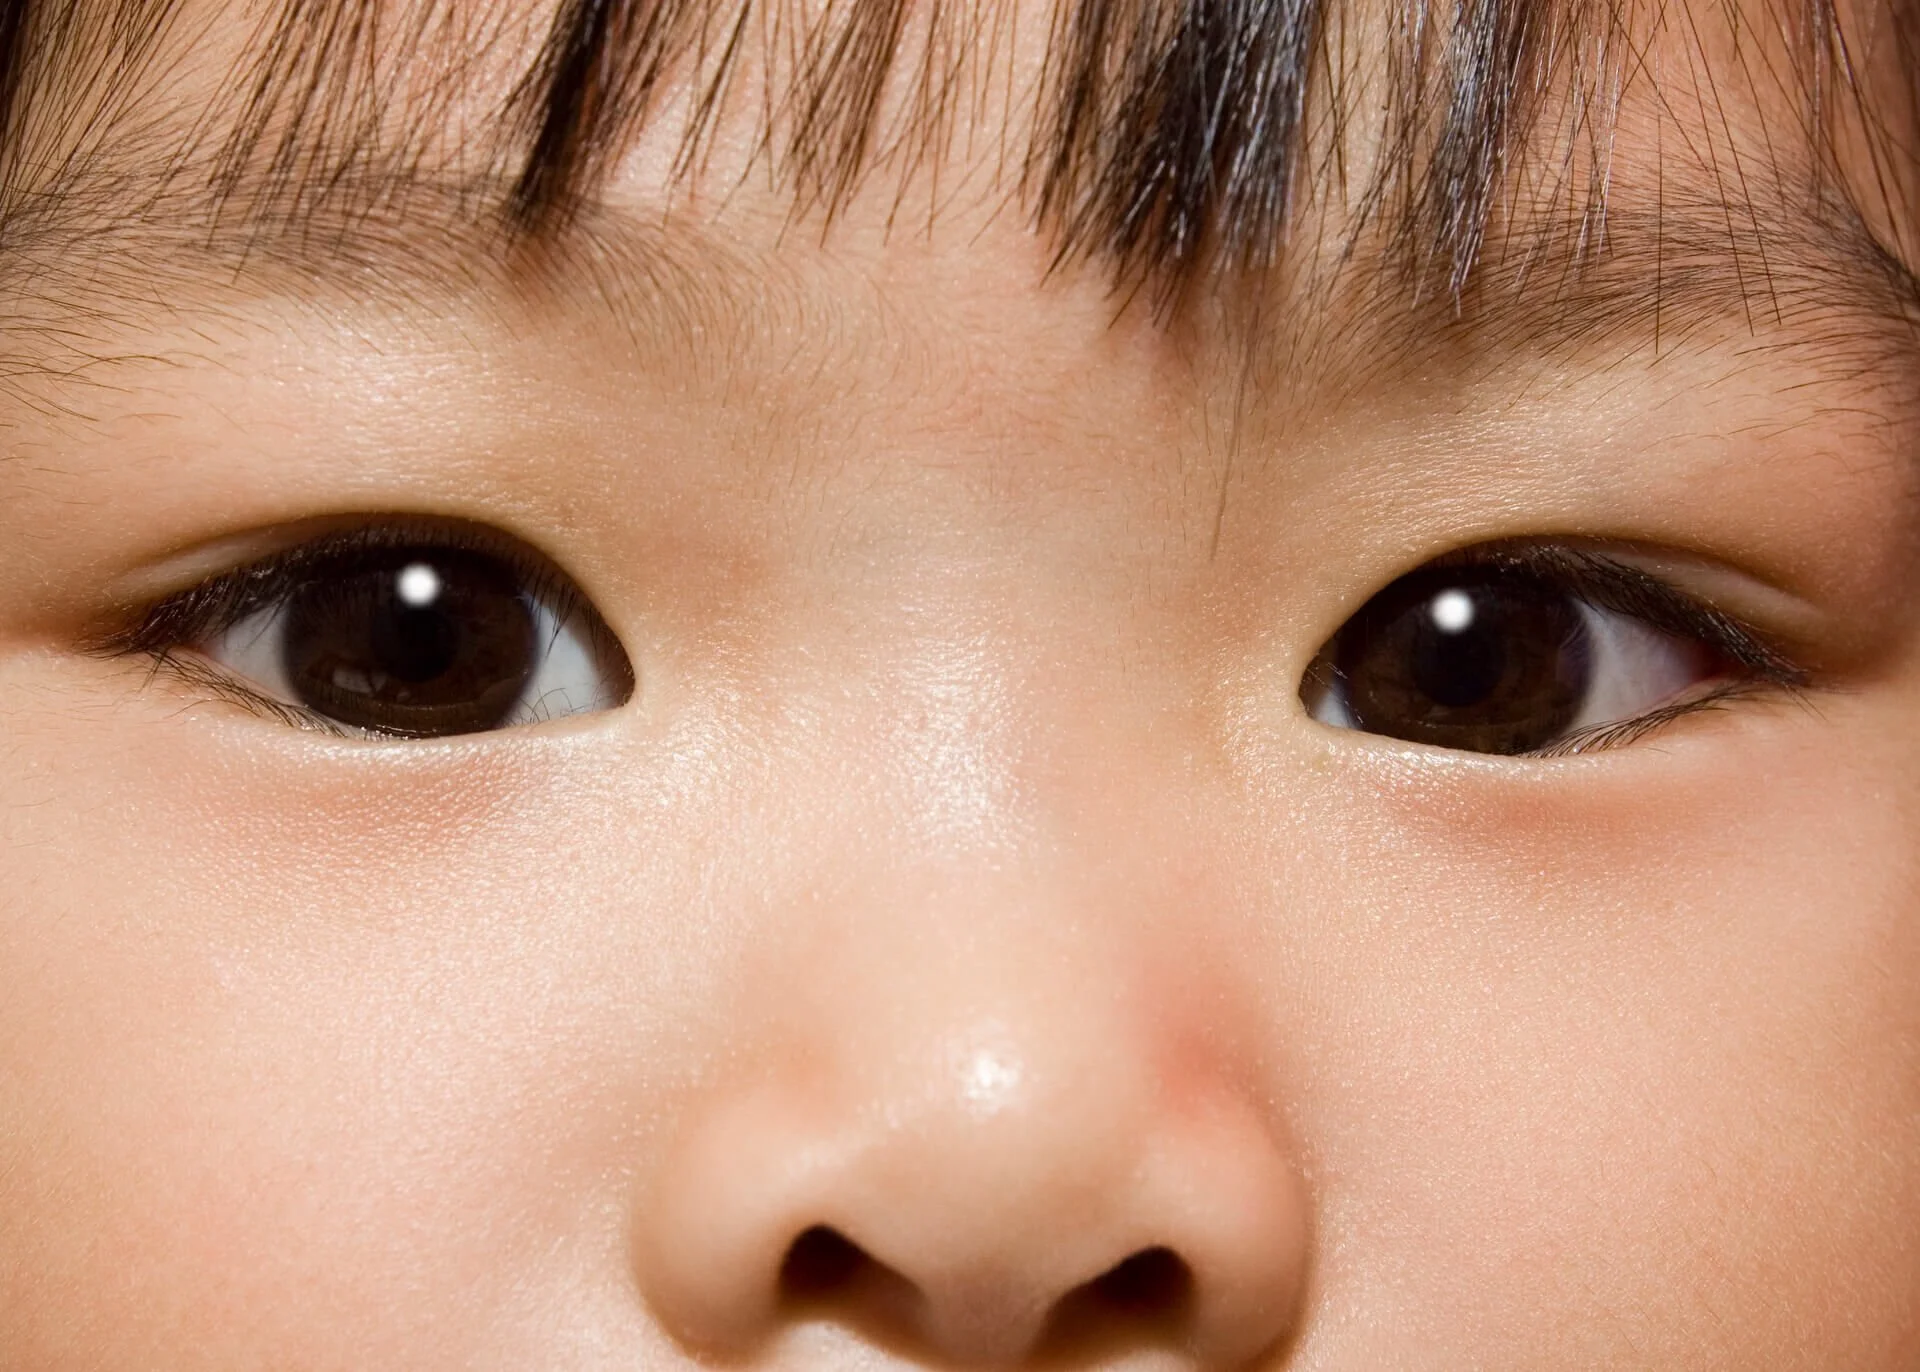 eyes of asian child